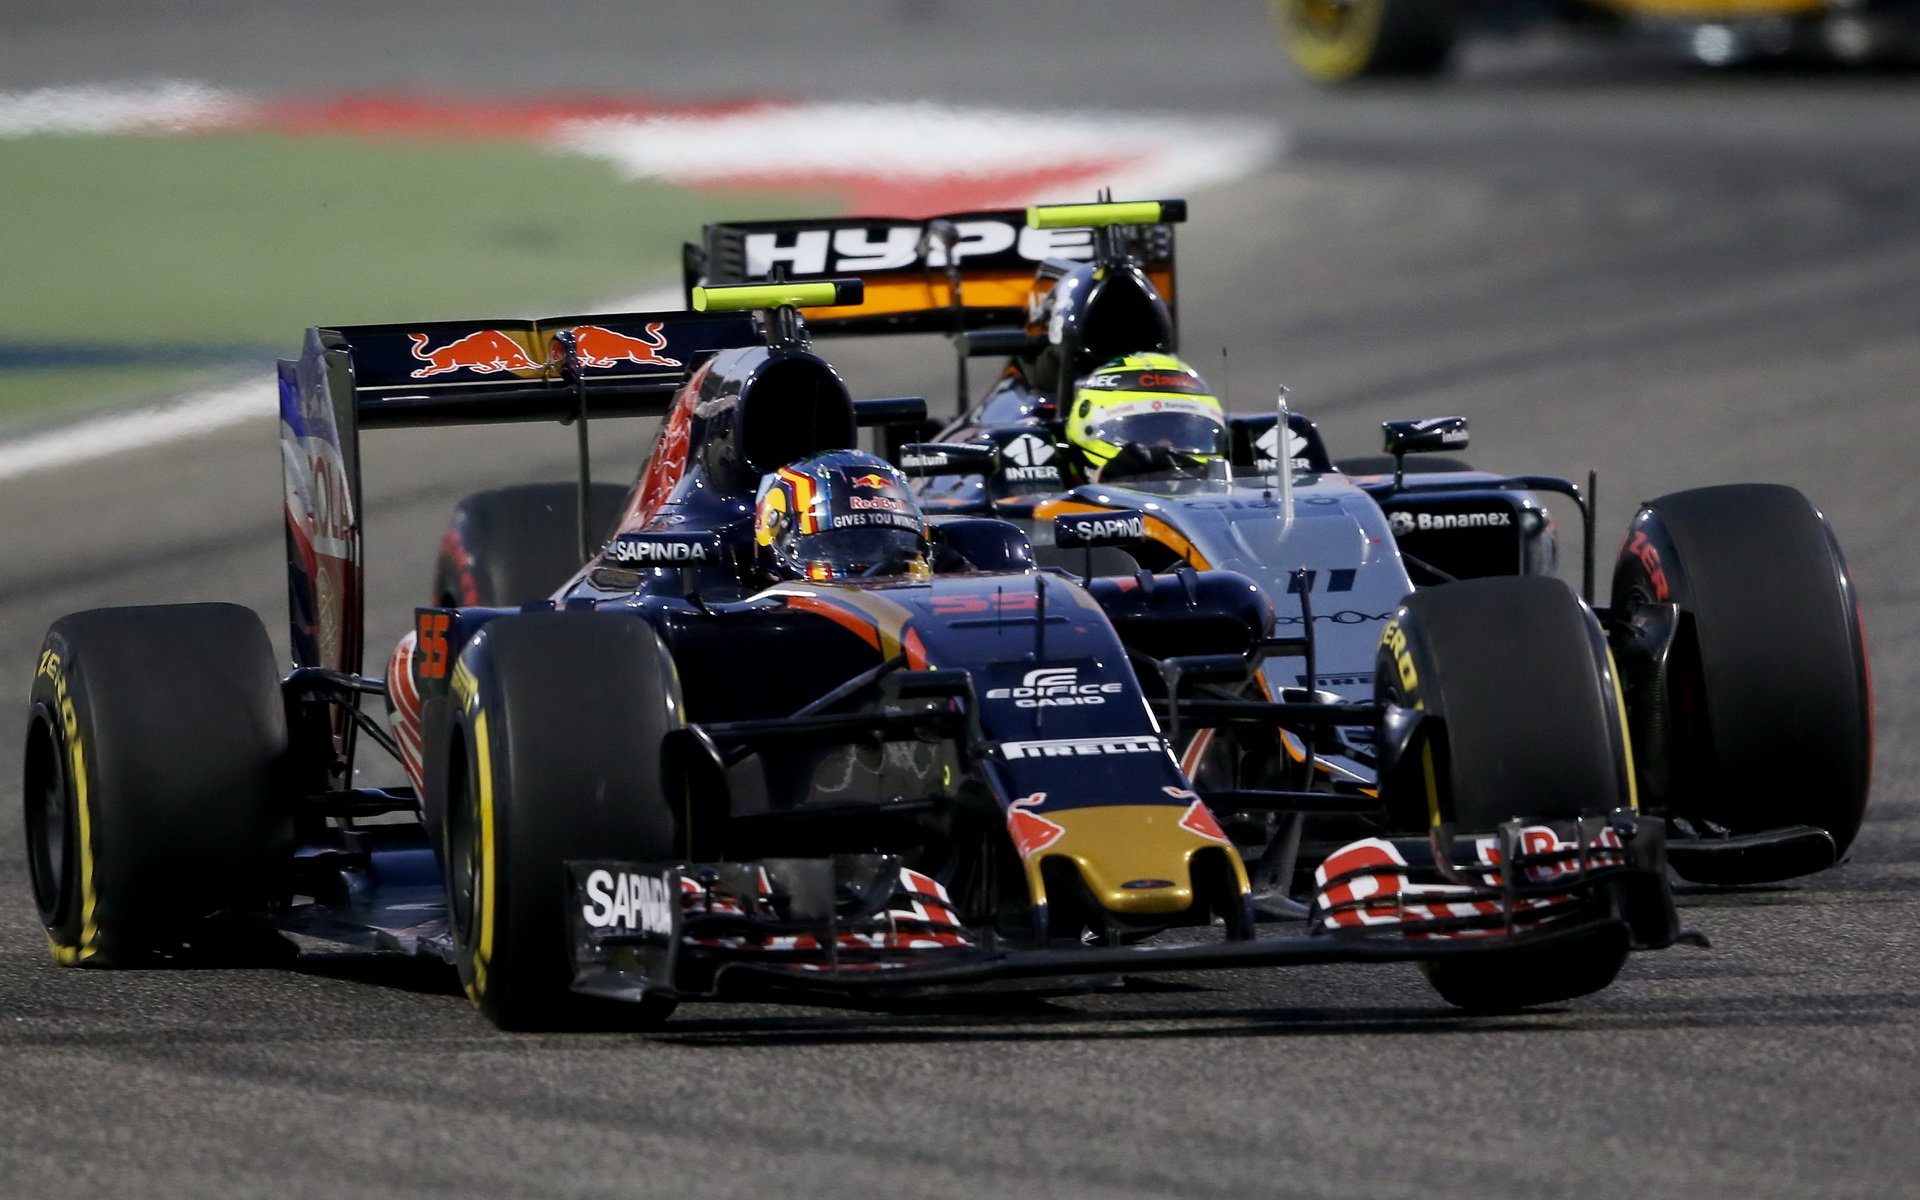 Carlos Sainz po kolizi s Perézem s prasklou zadní pneumatikou v závodě v Bahrajnu